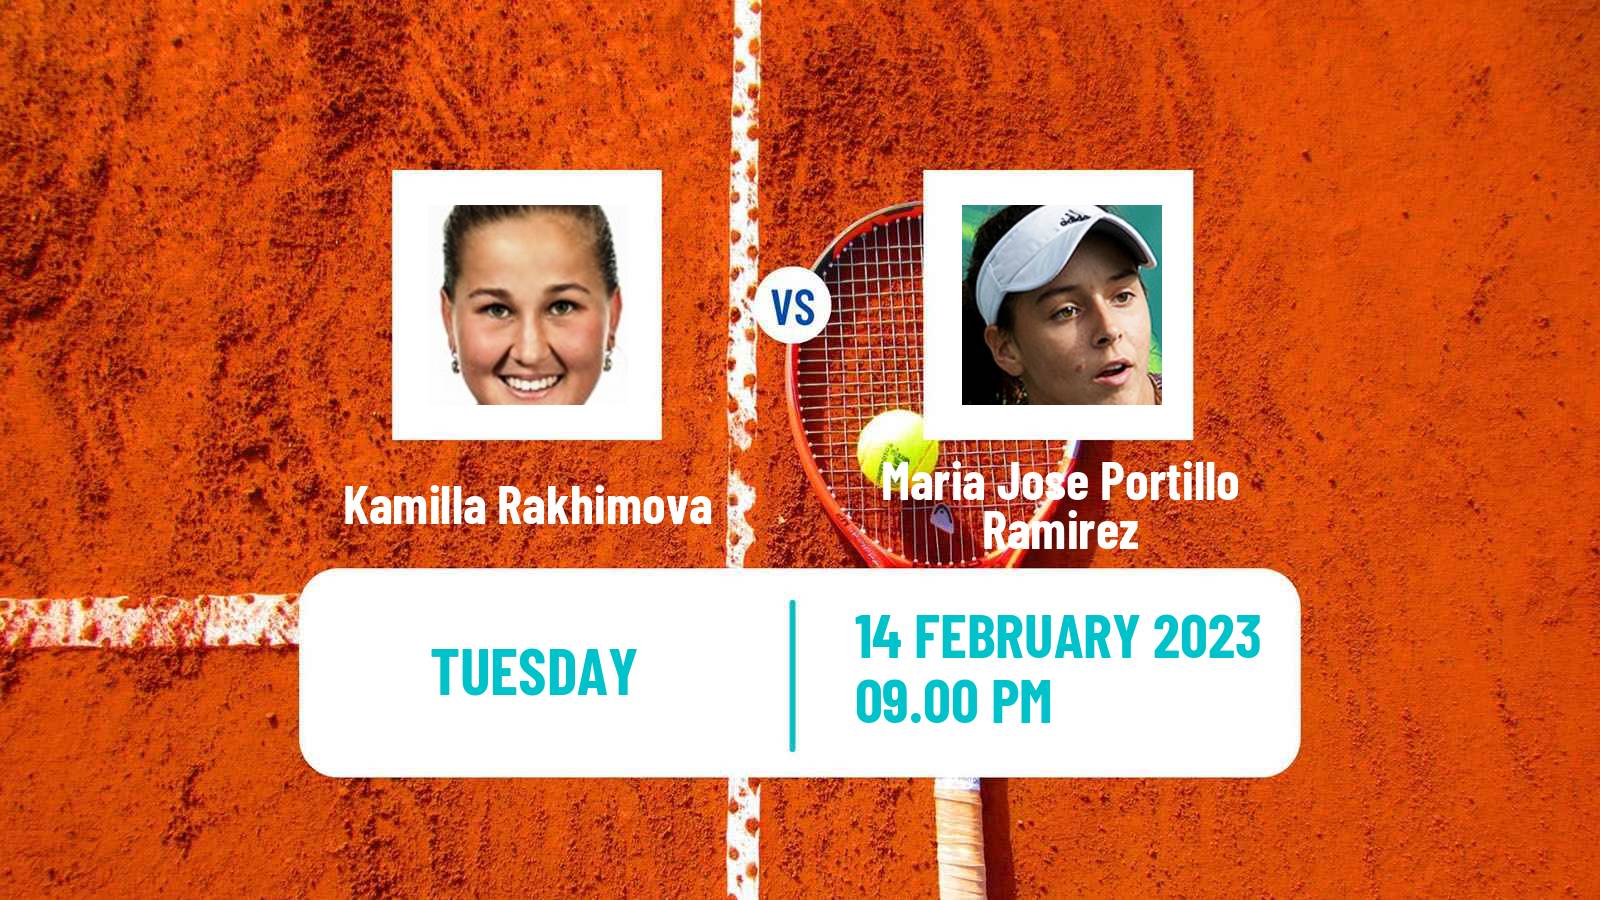 Tennis ITF Tournaments Kamilla Rakhimova - Maria Jose Portillo Ramirez